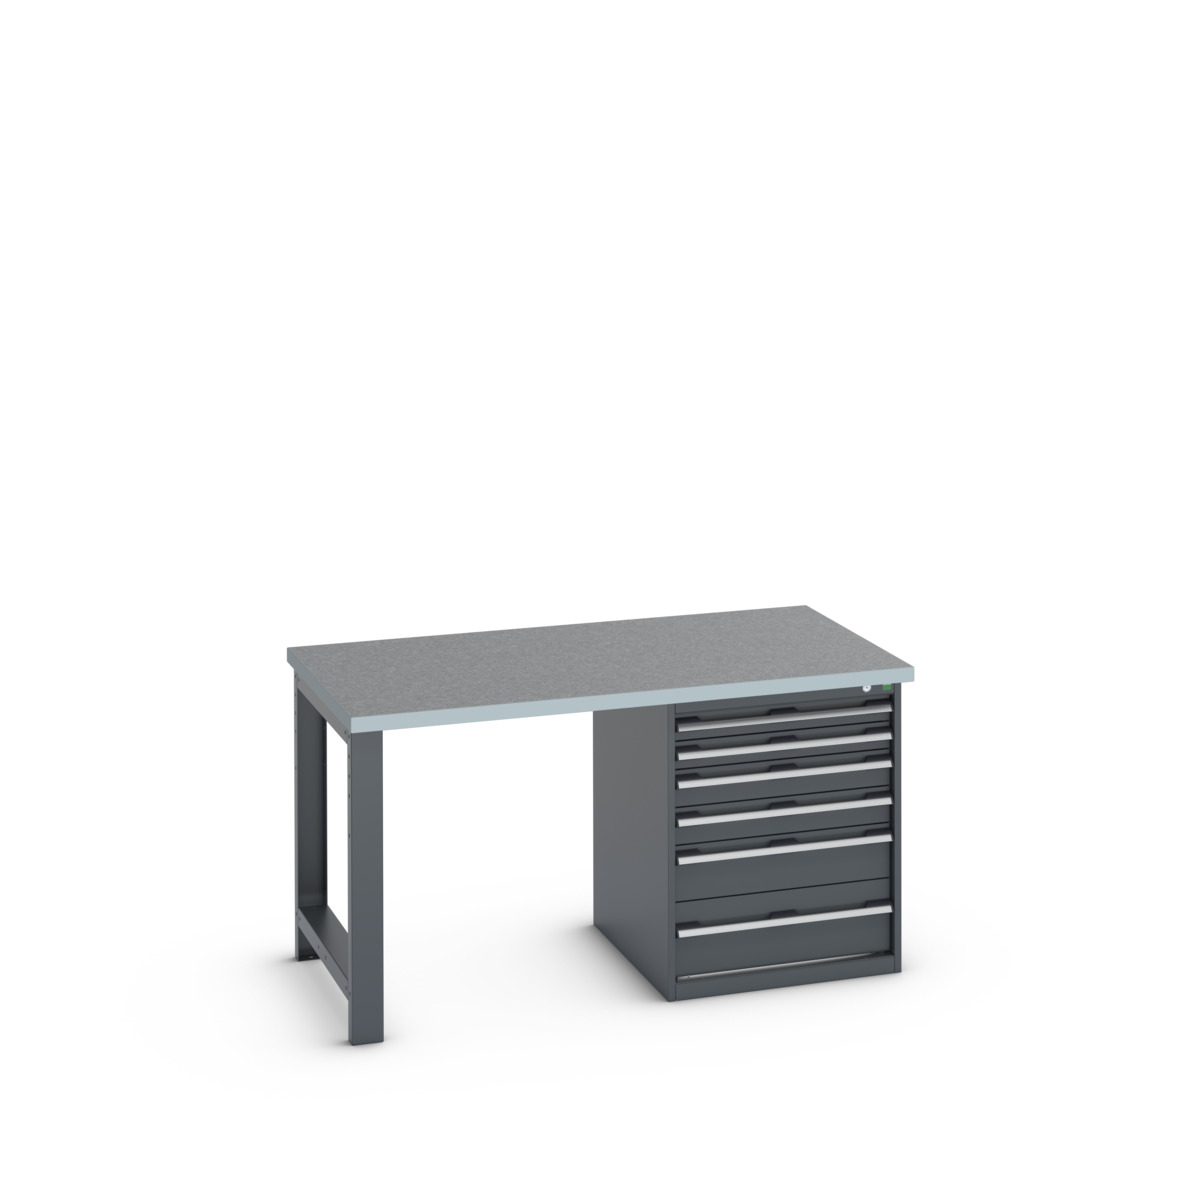 41004114.77V - cubio pedestal bench (lino)